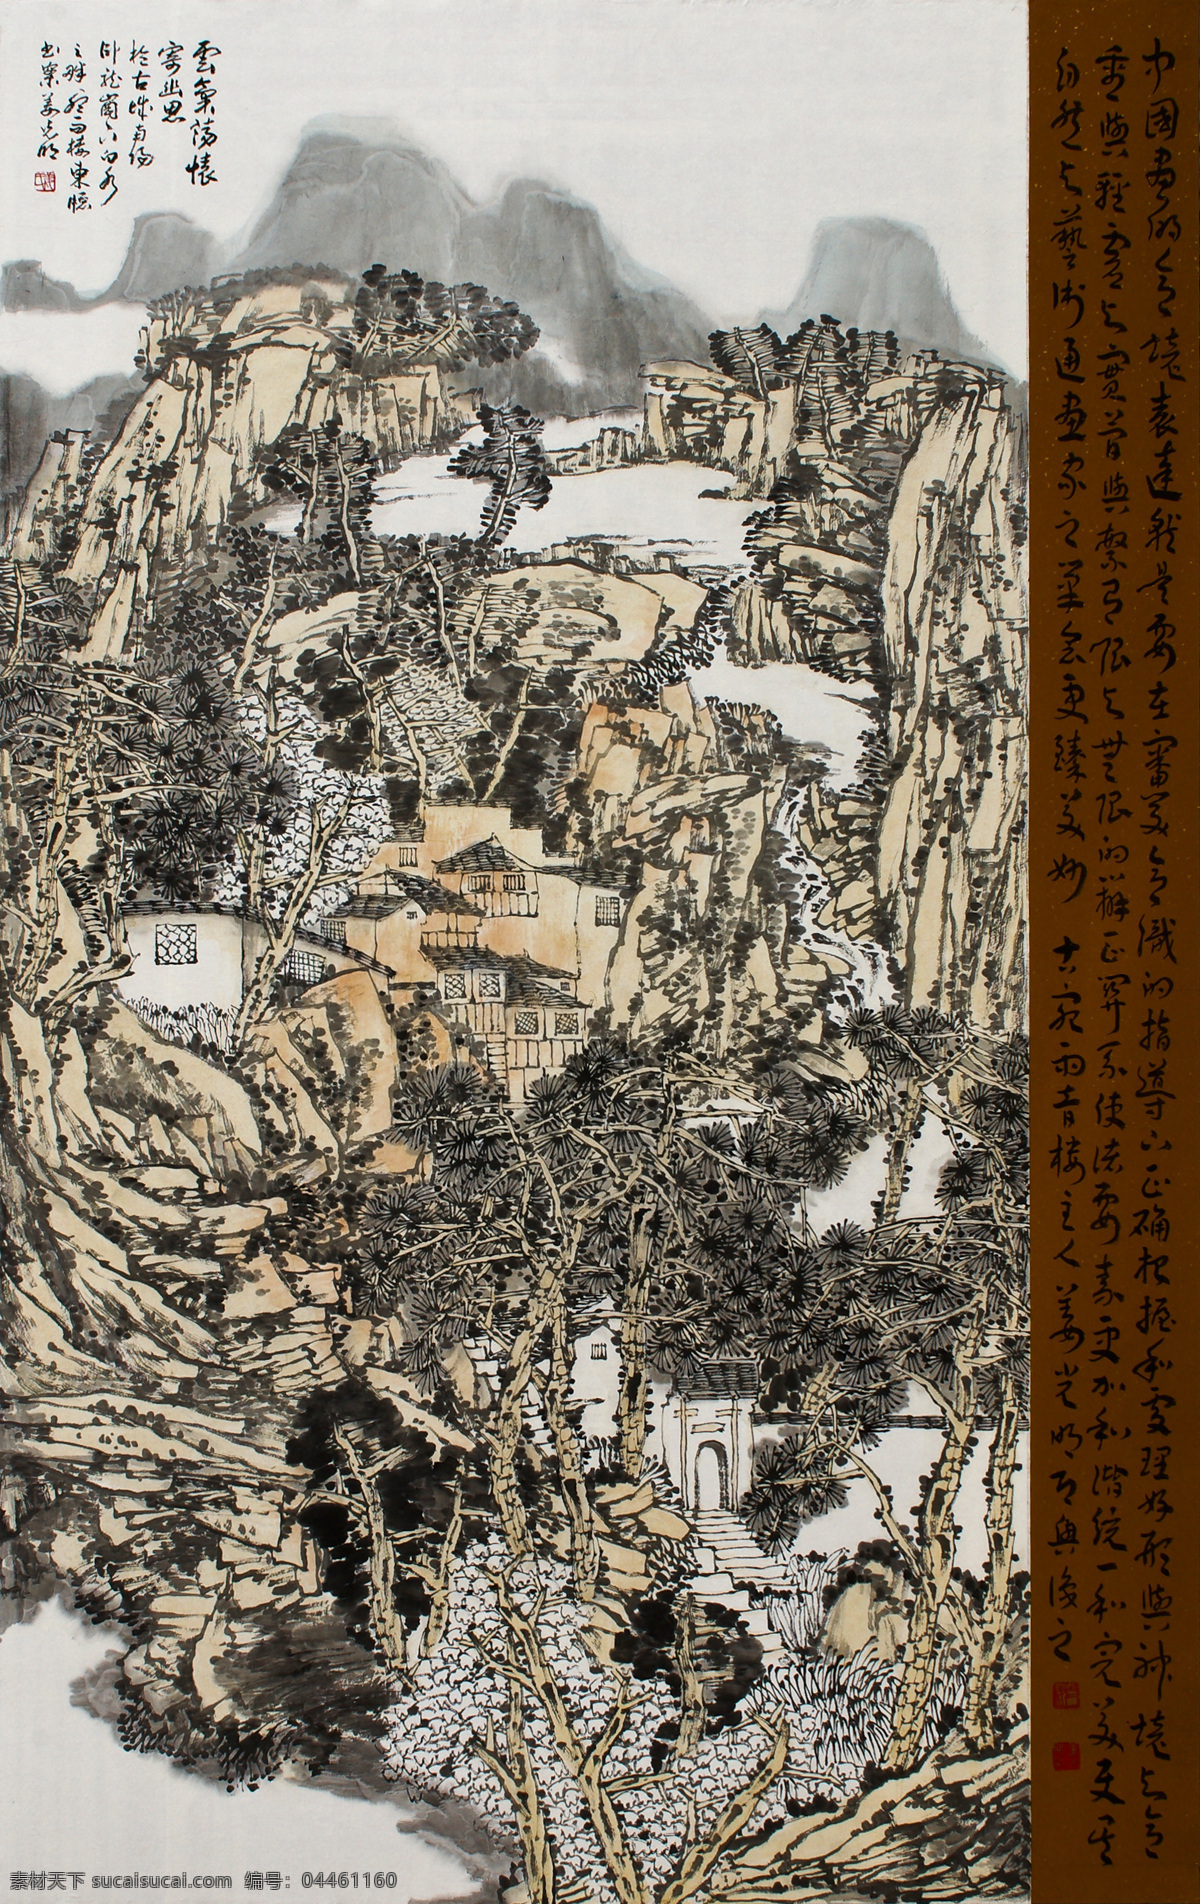 山中寺庙 姜光明 国画 山水 文化艺术 绘画书法 中国画 水墨画